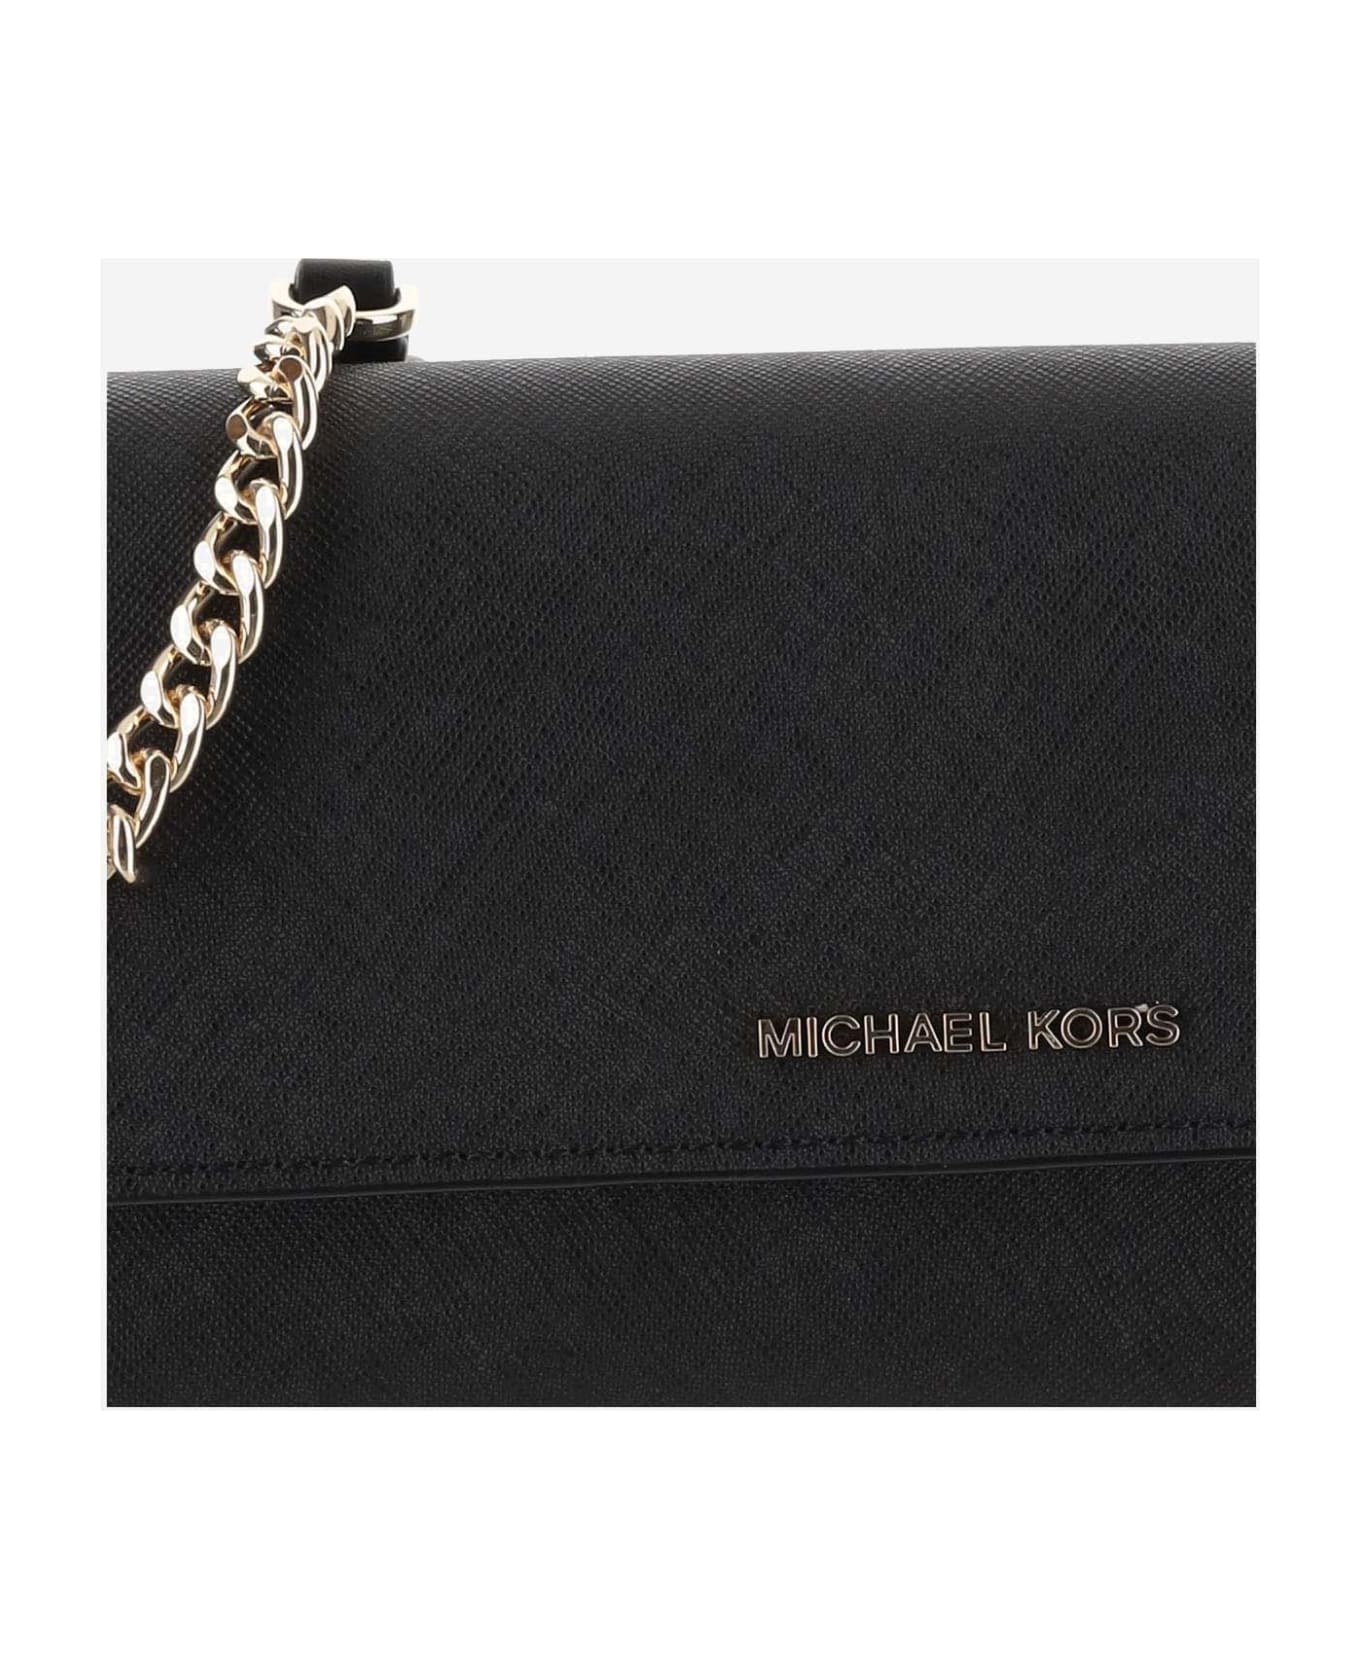 Michael Kors Wallet With Shoulder Strap - Black